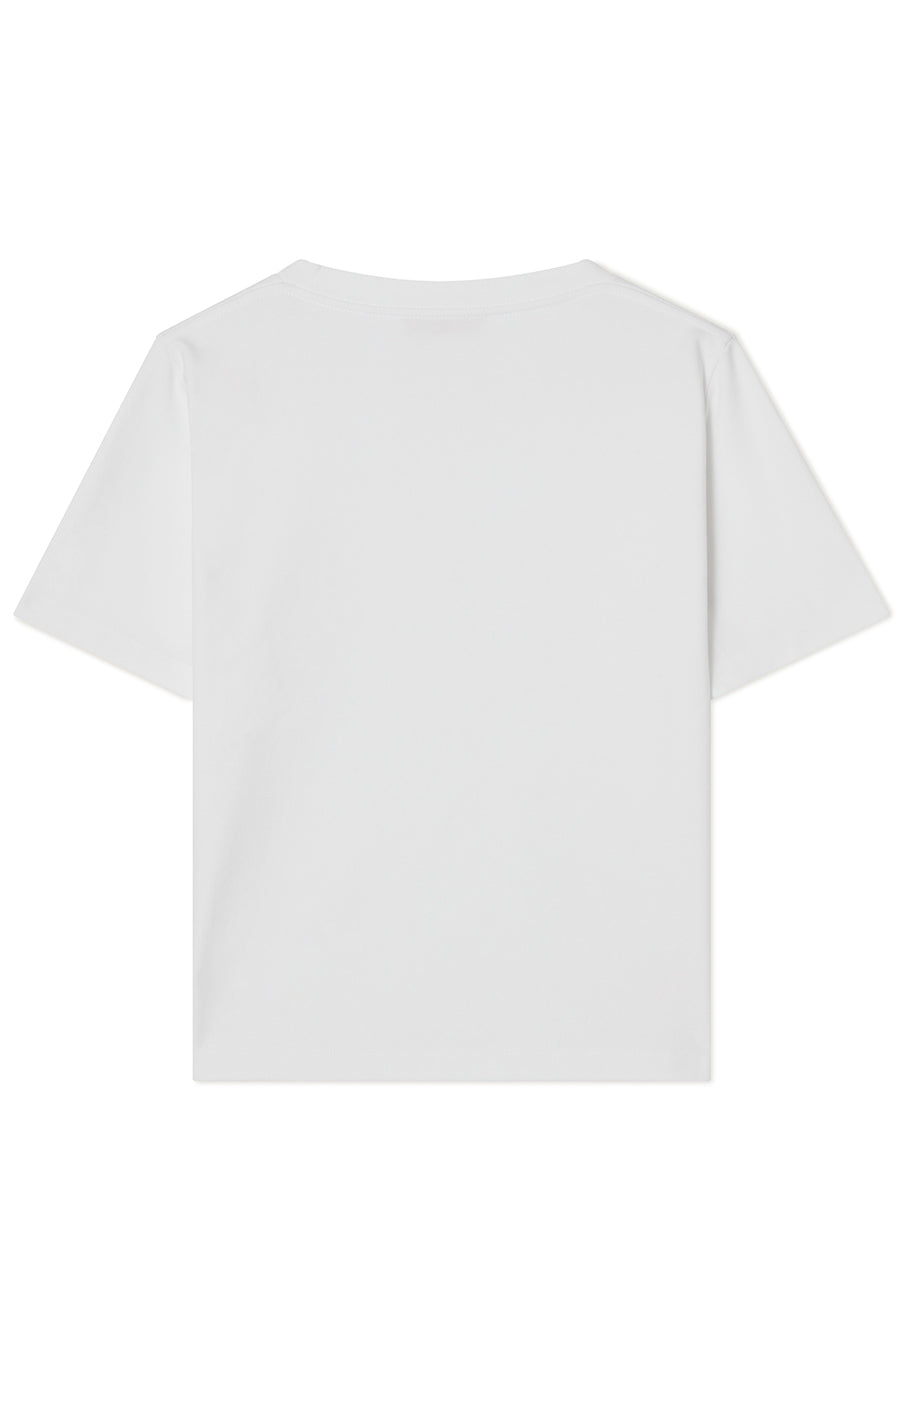 Tessa T-shirt White